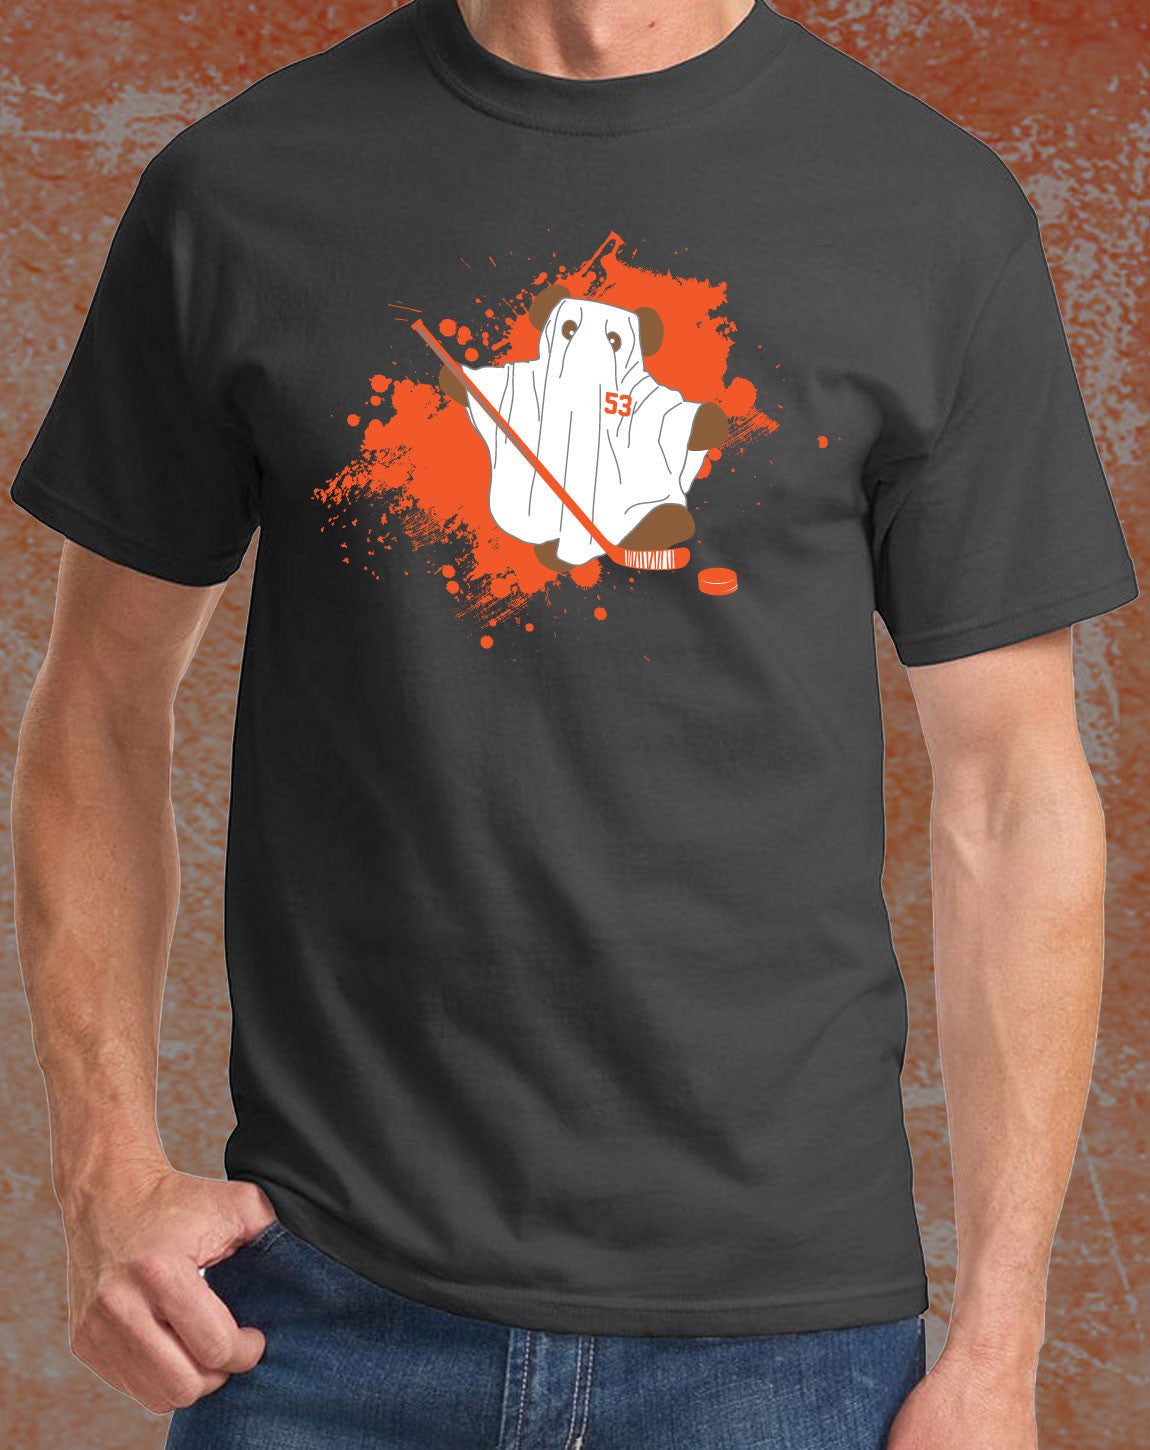 ghost bear t shirt flyers